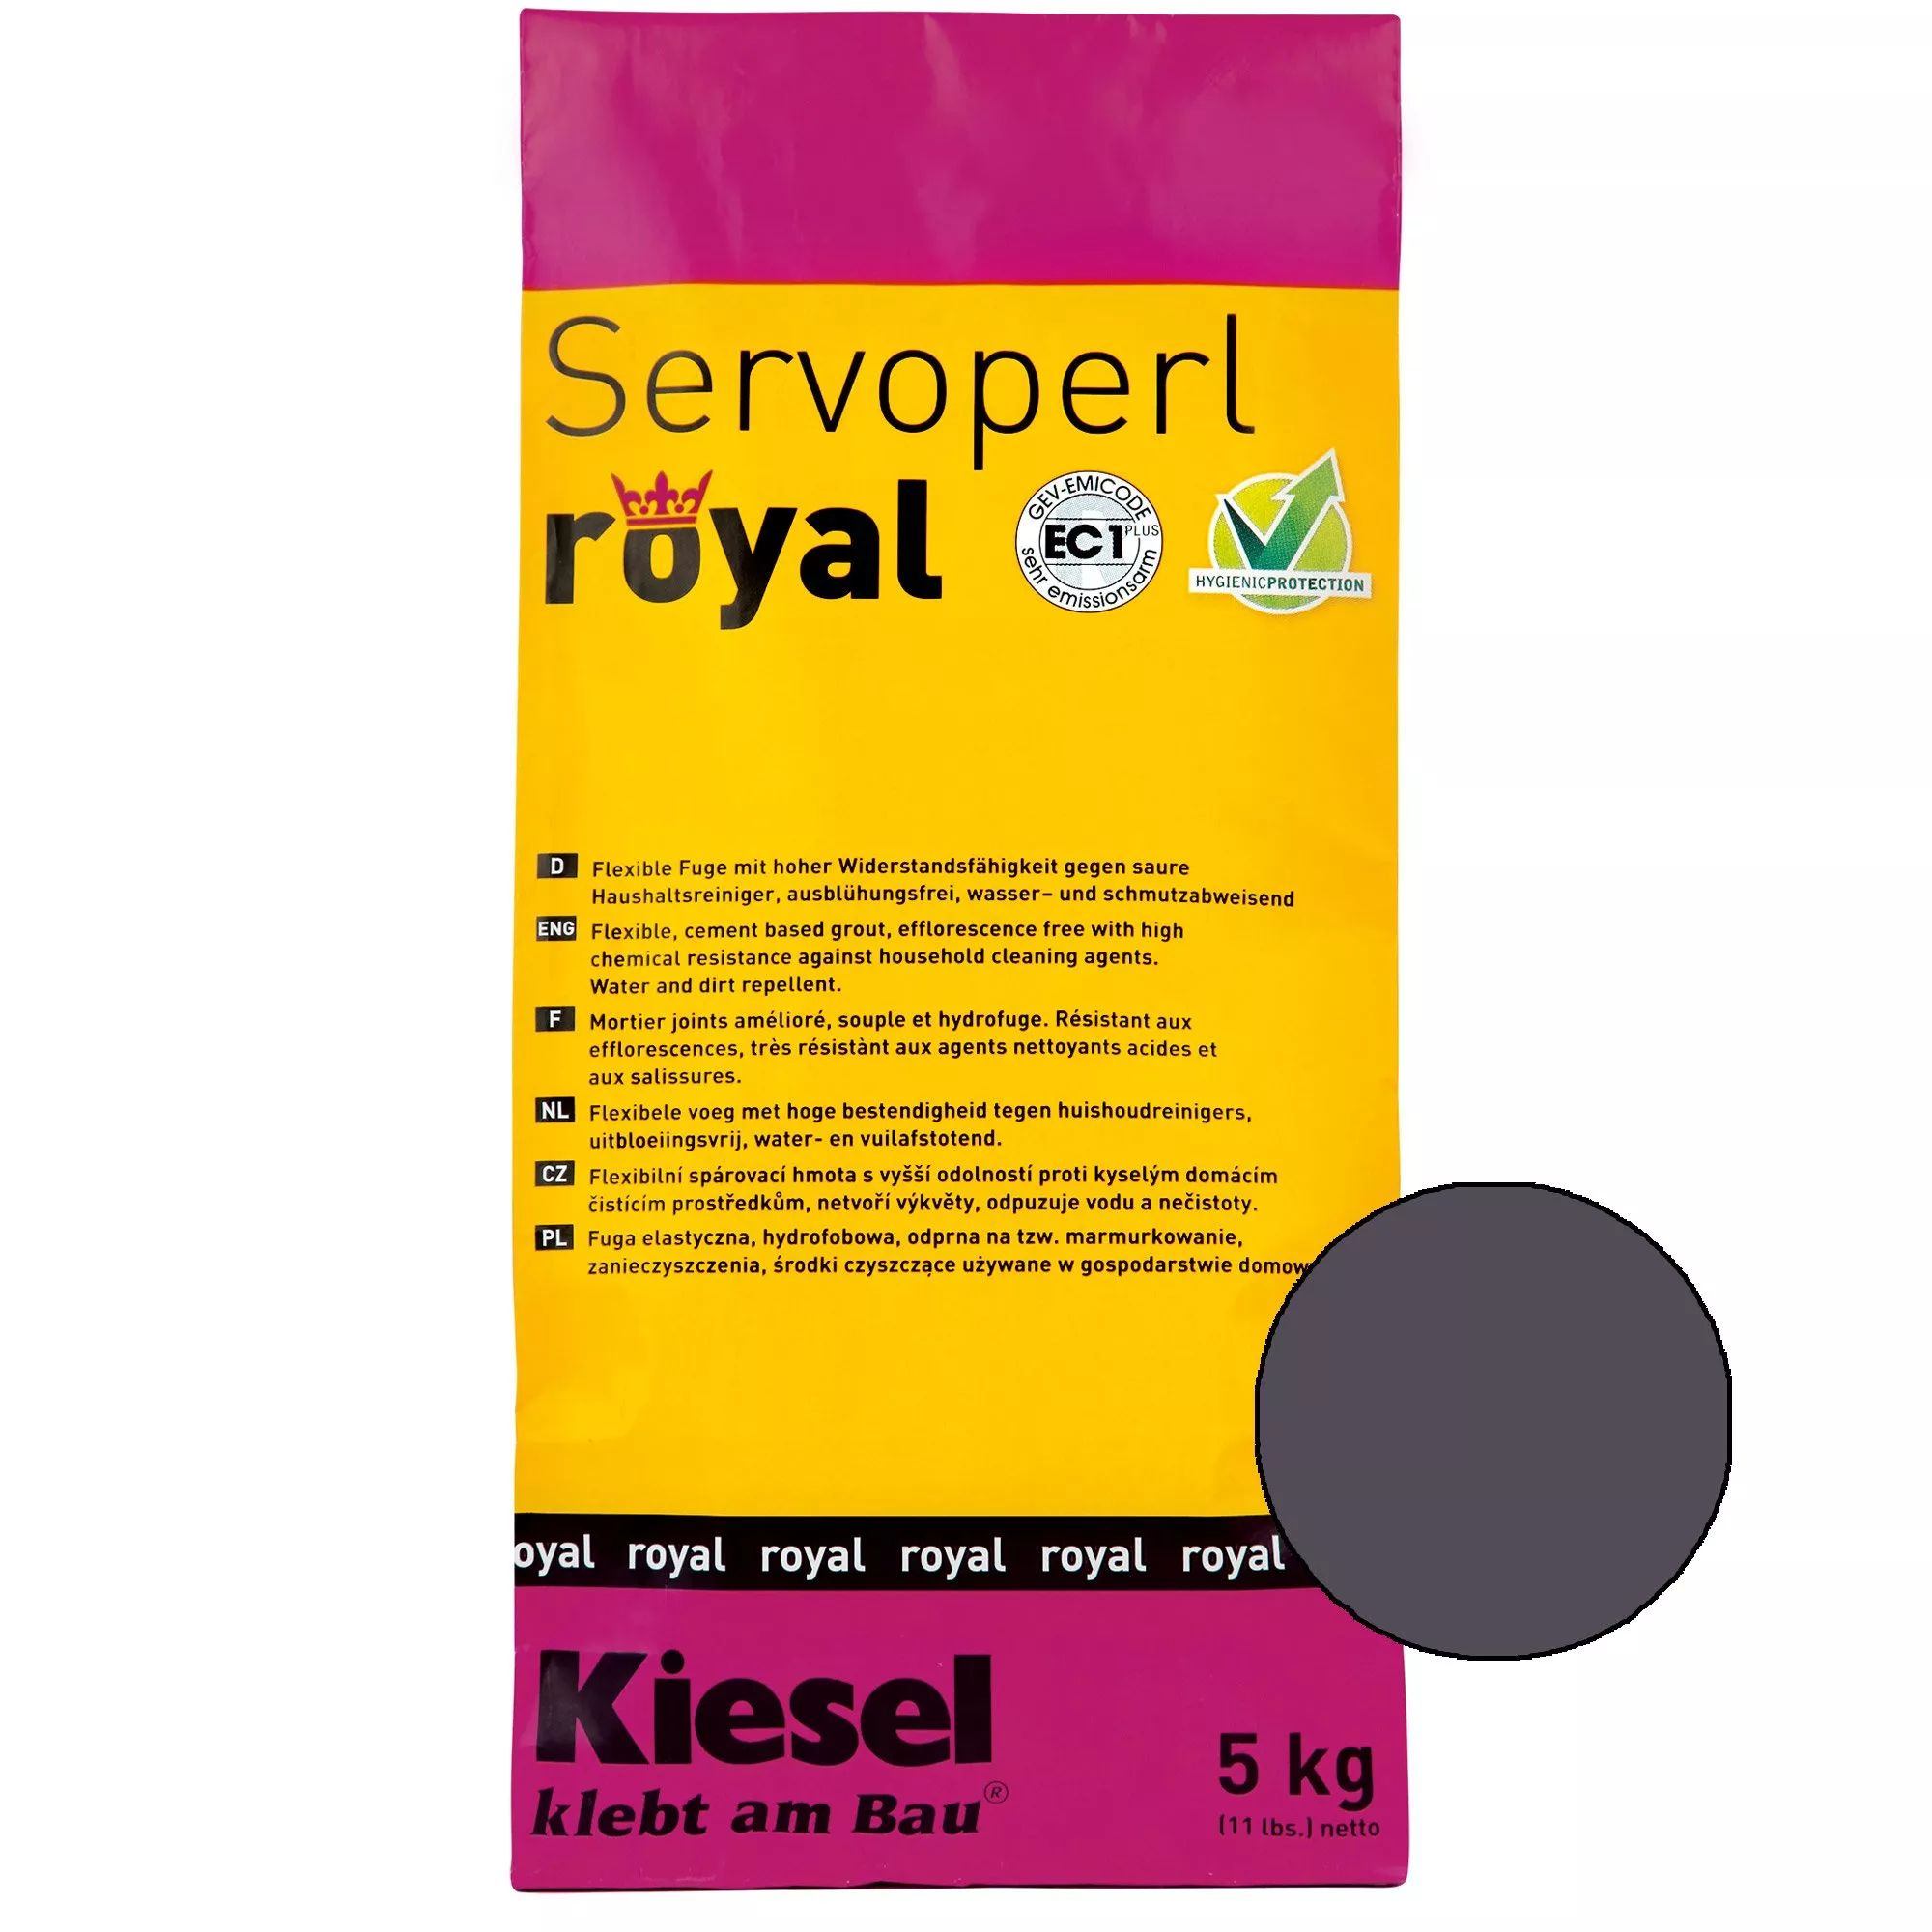 Kiesel Servoperl royal - смес за фуги-5Kg Shadow